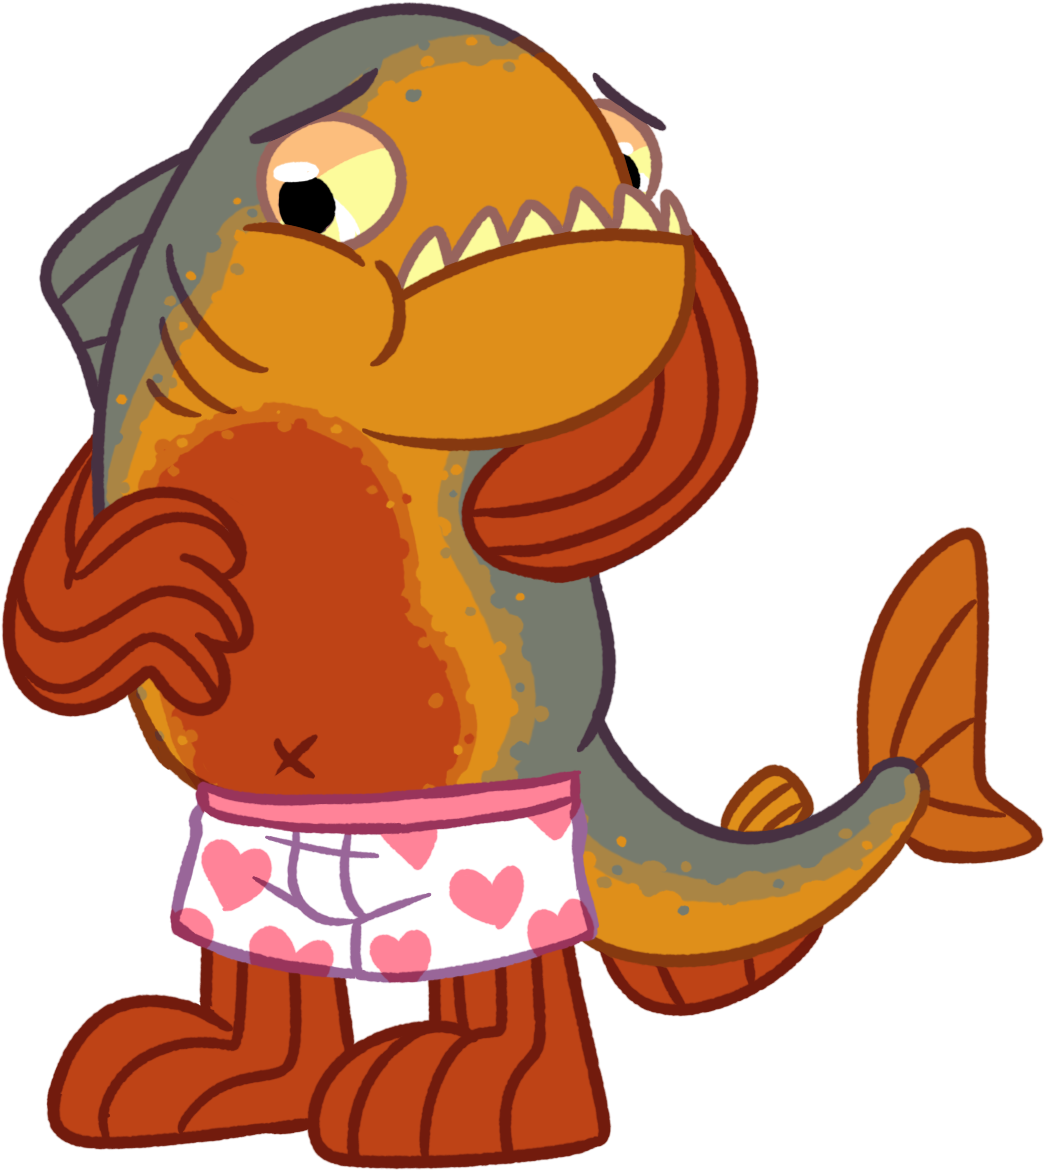 Chubby Piranha In Boxers - Cartoon (1084x1209)